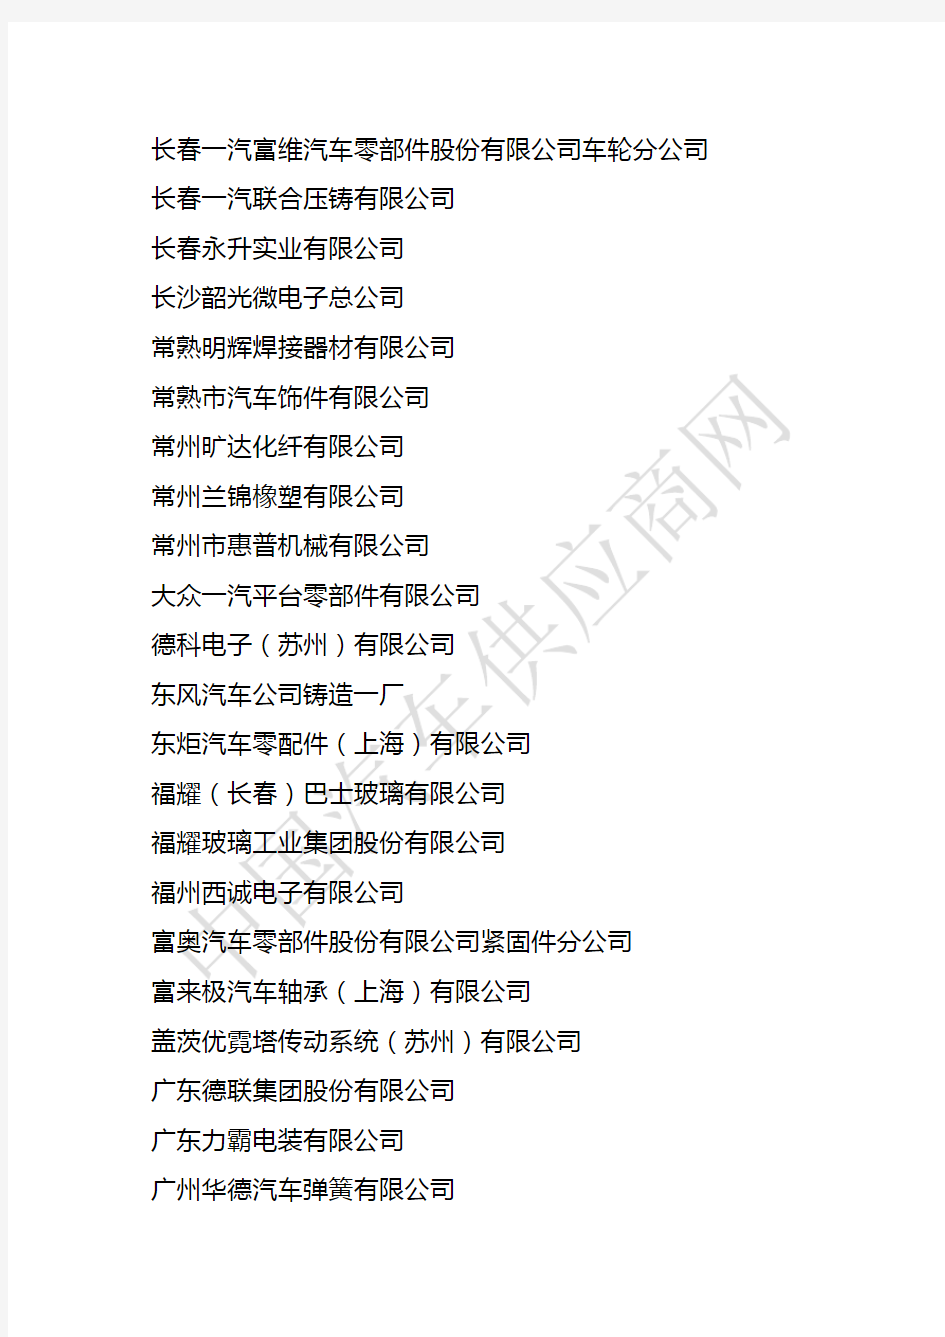 上海大众240家核心配套供应商名单